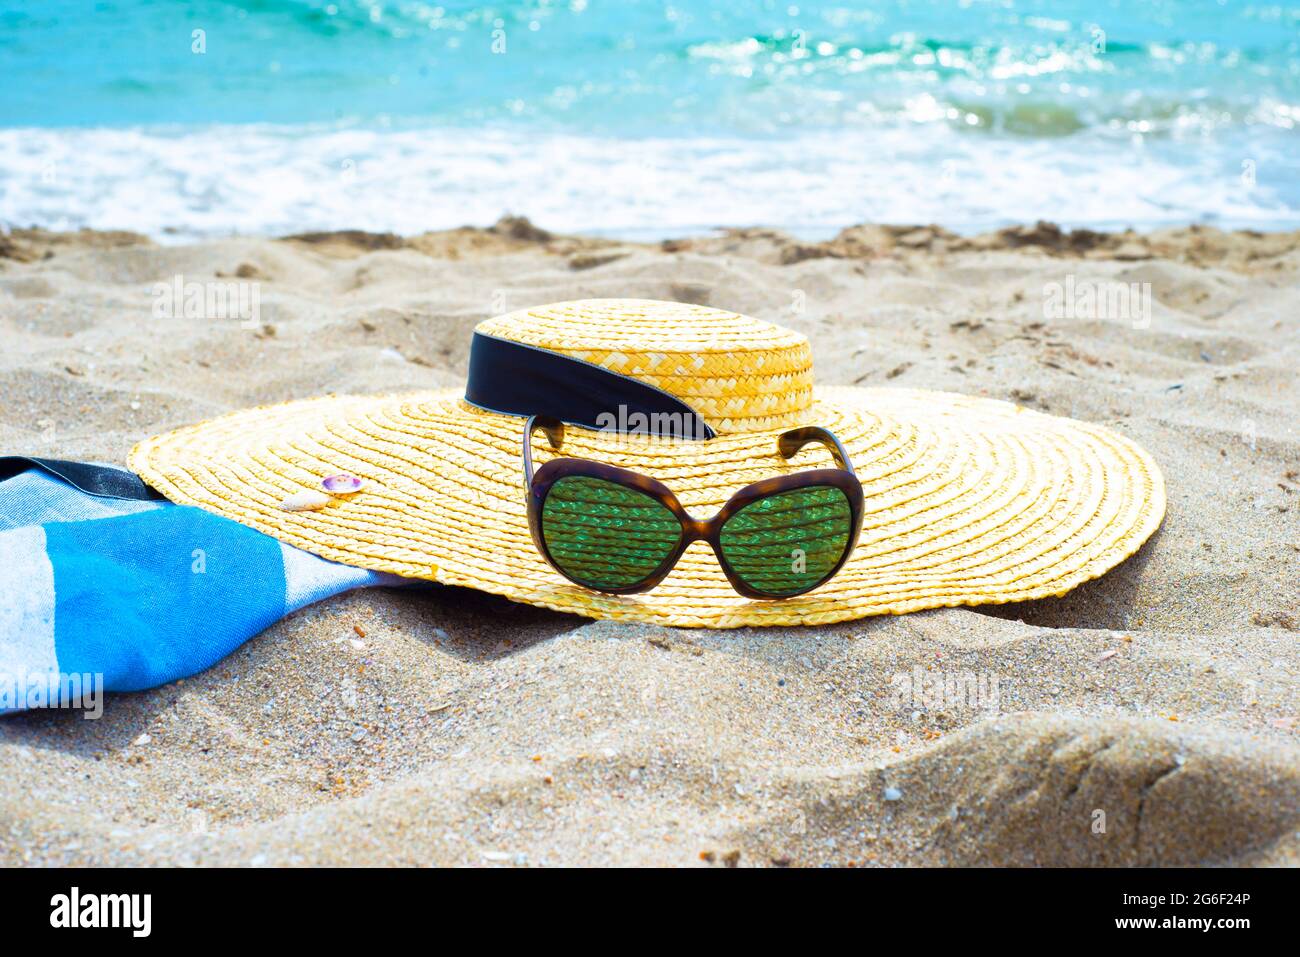 Accessori per la protezione del sole su una spiaggia sabbiosa in riva al mare. Cappello di paglia con nastro. Occhiali da sole. Asciugamano in cotone pareo. Foto Stock